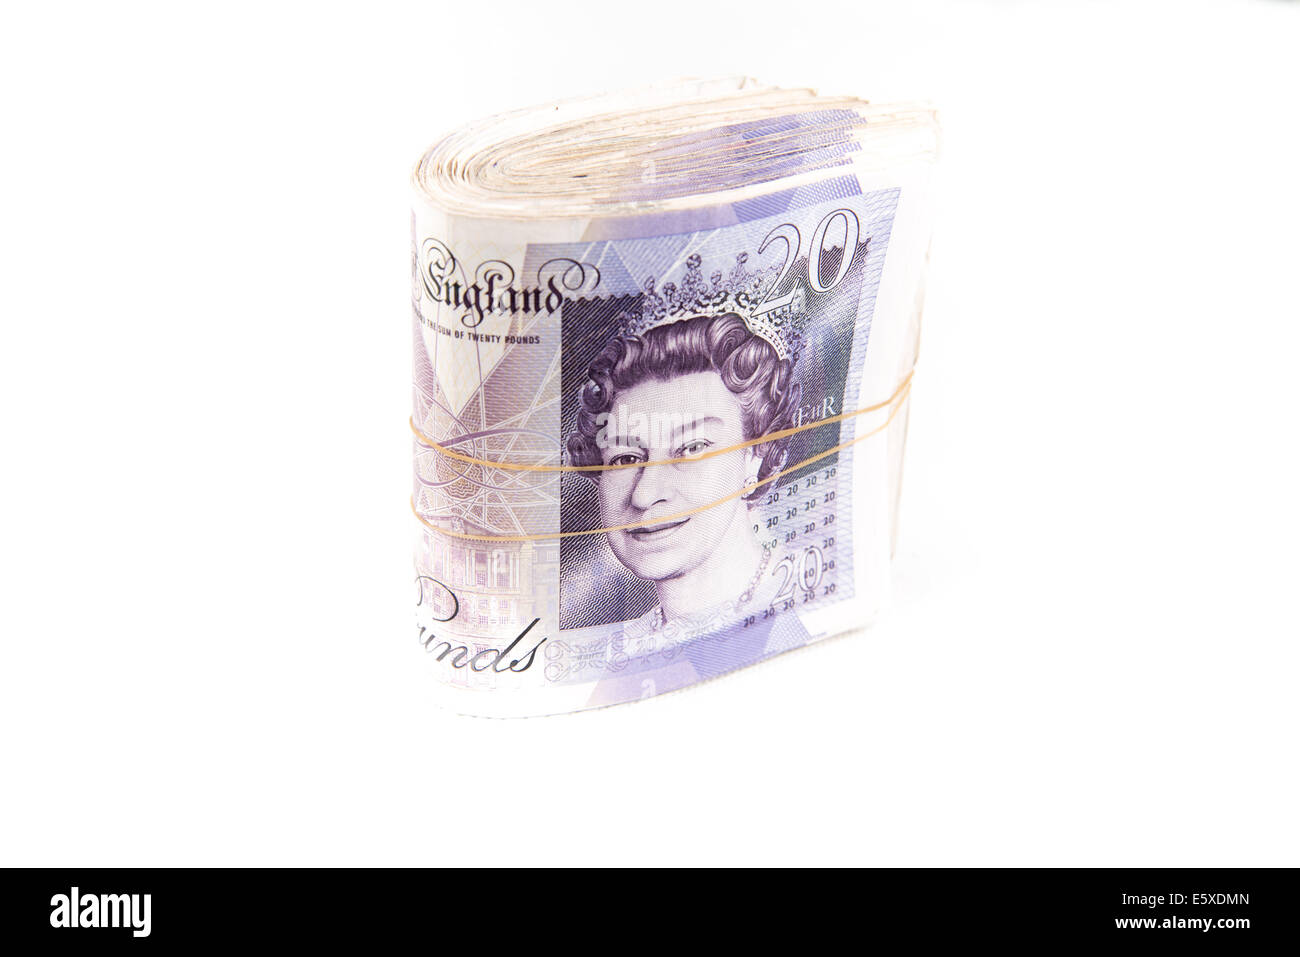 Britische Pfund-Banknoten auf weißem Hintergrund Stockfoto